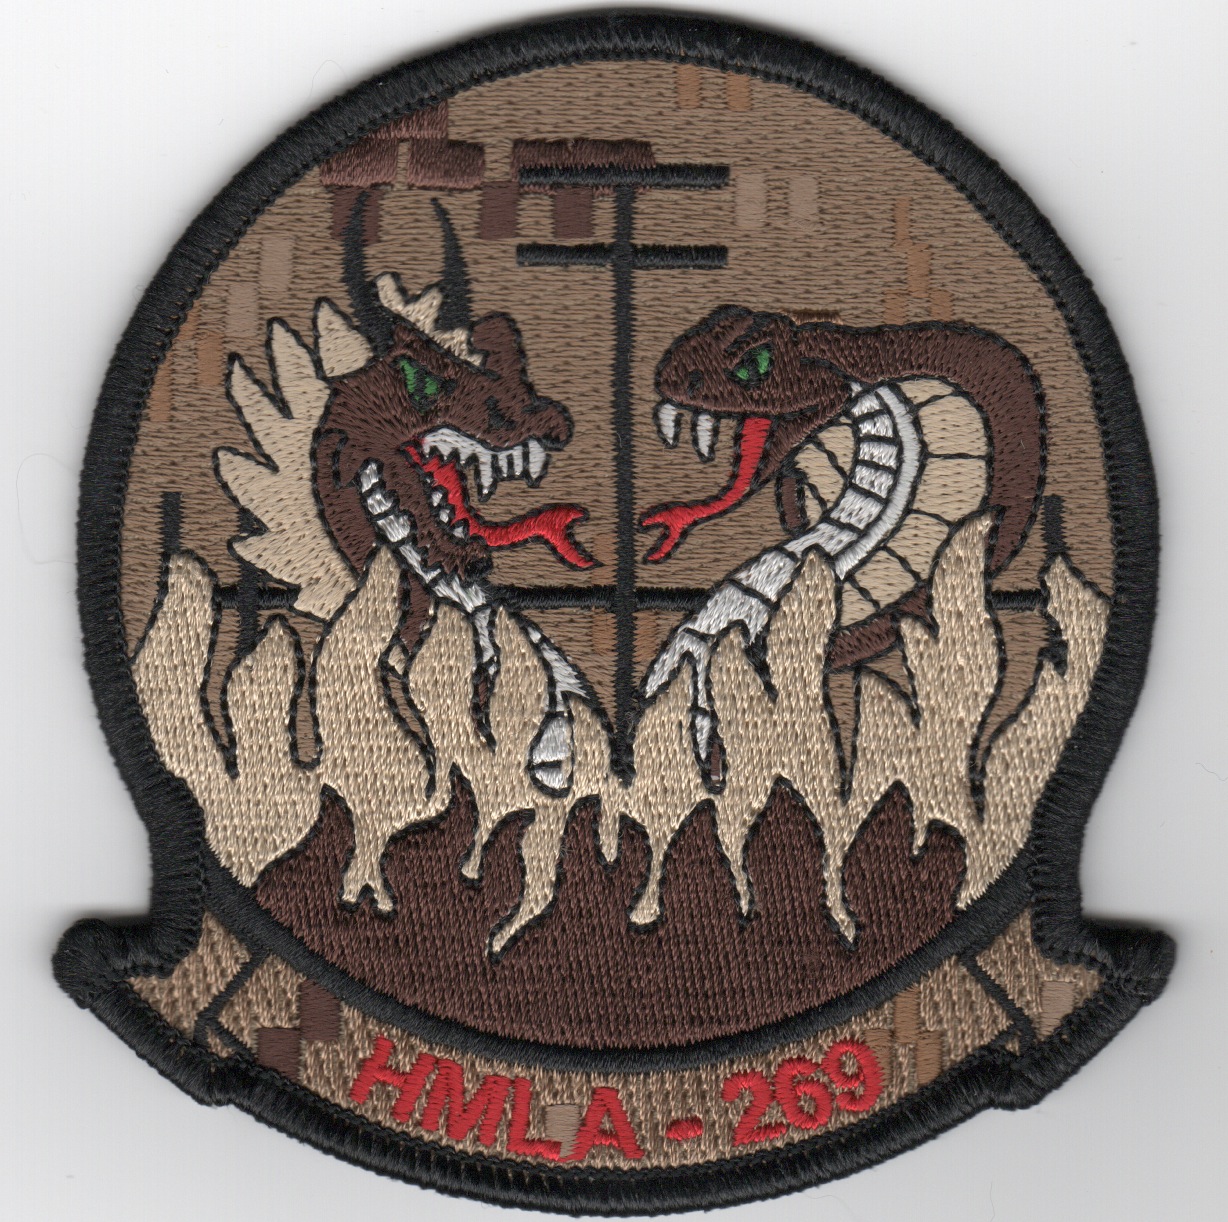 HMLA-269 Squadron Patch (Des)